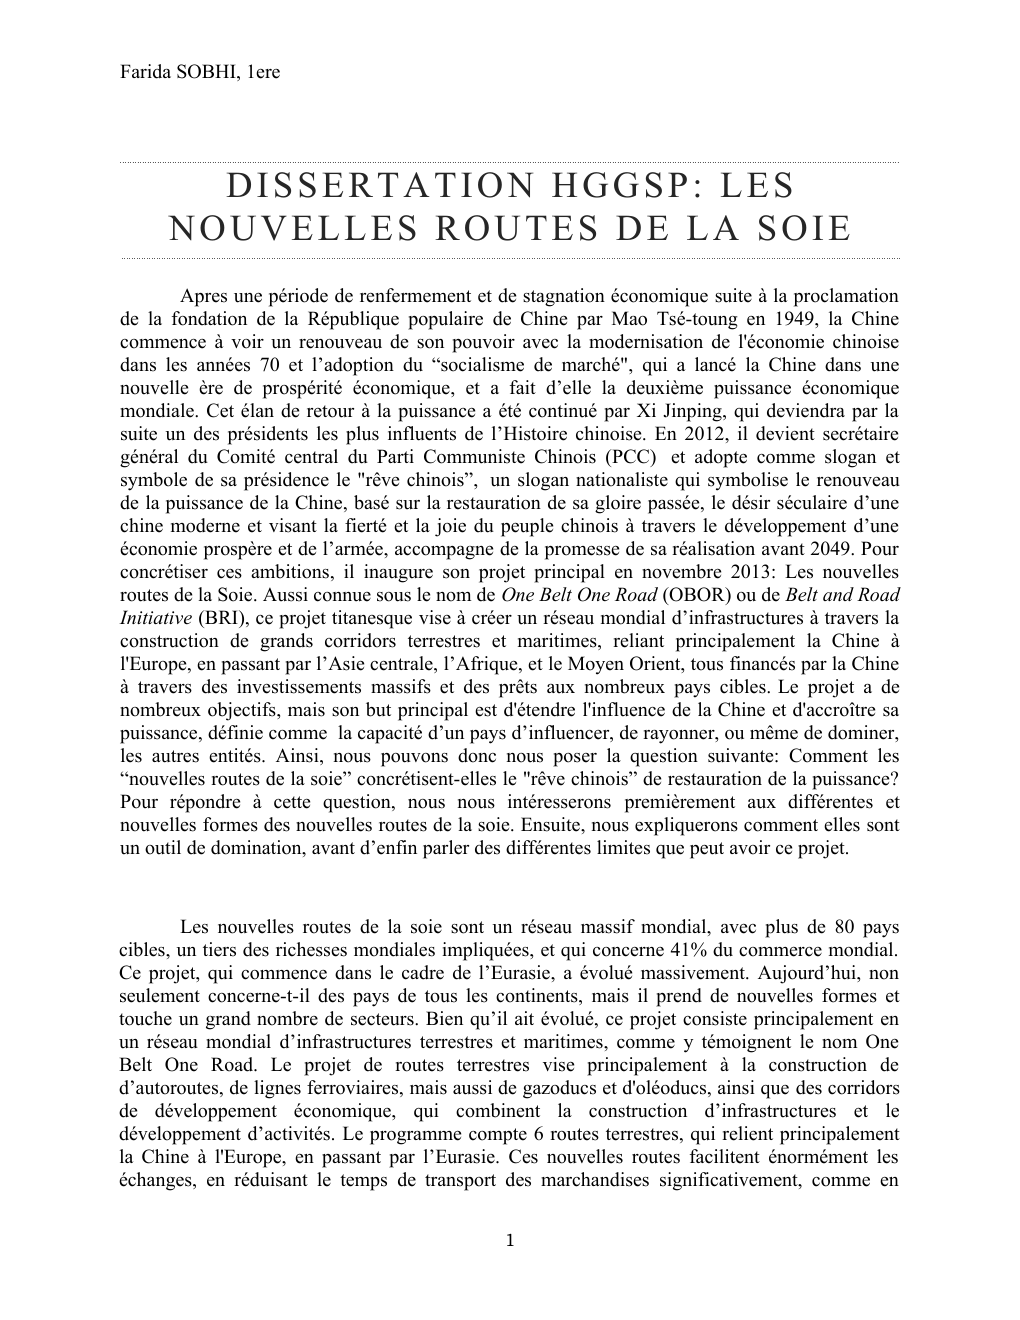 DISSERTATION HGGSP LES NOUVELLES ROUTES DE LA SOIE